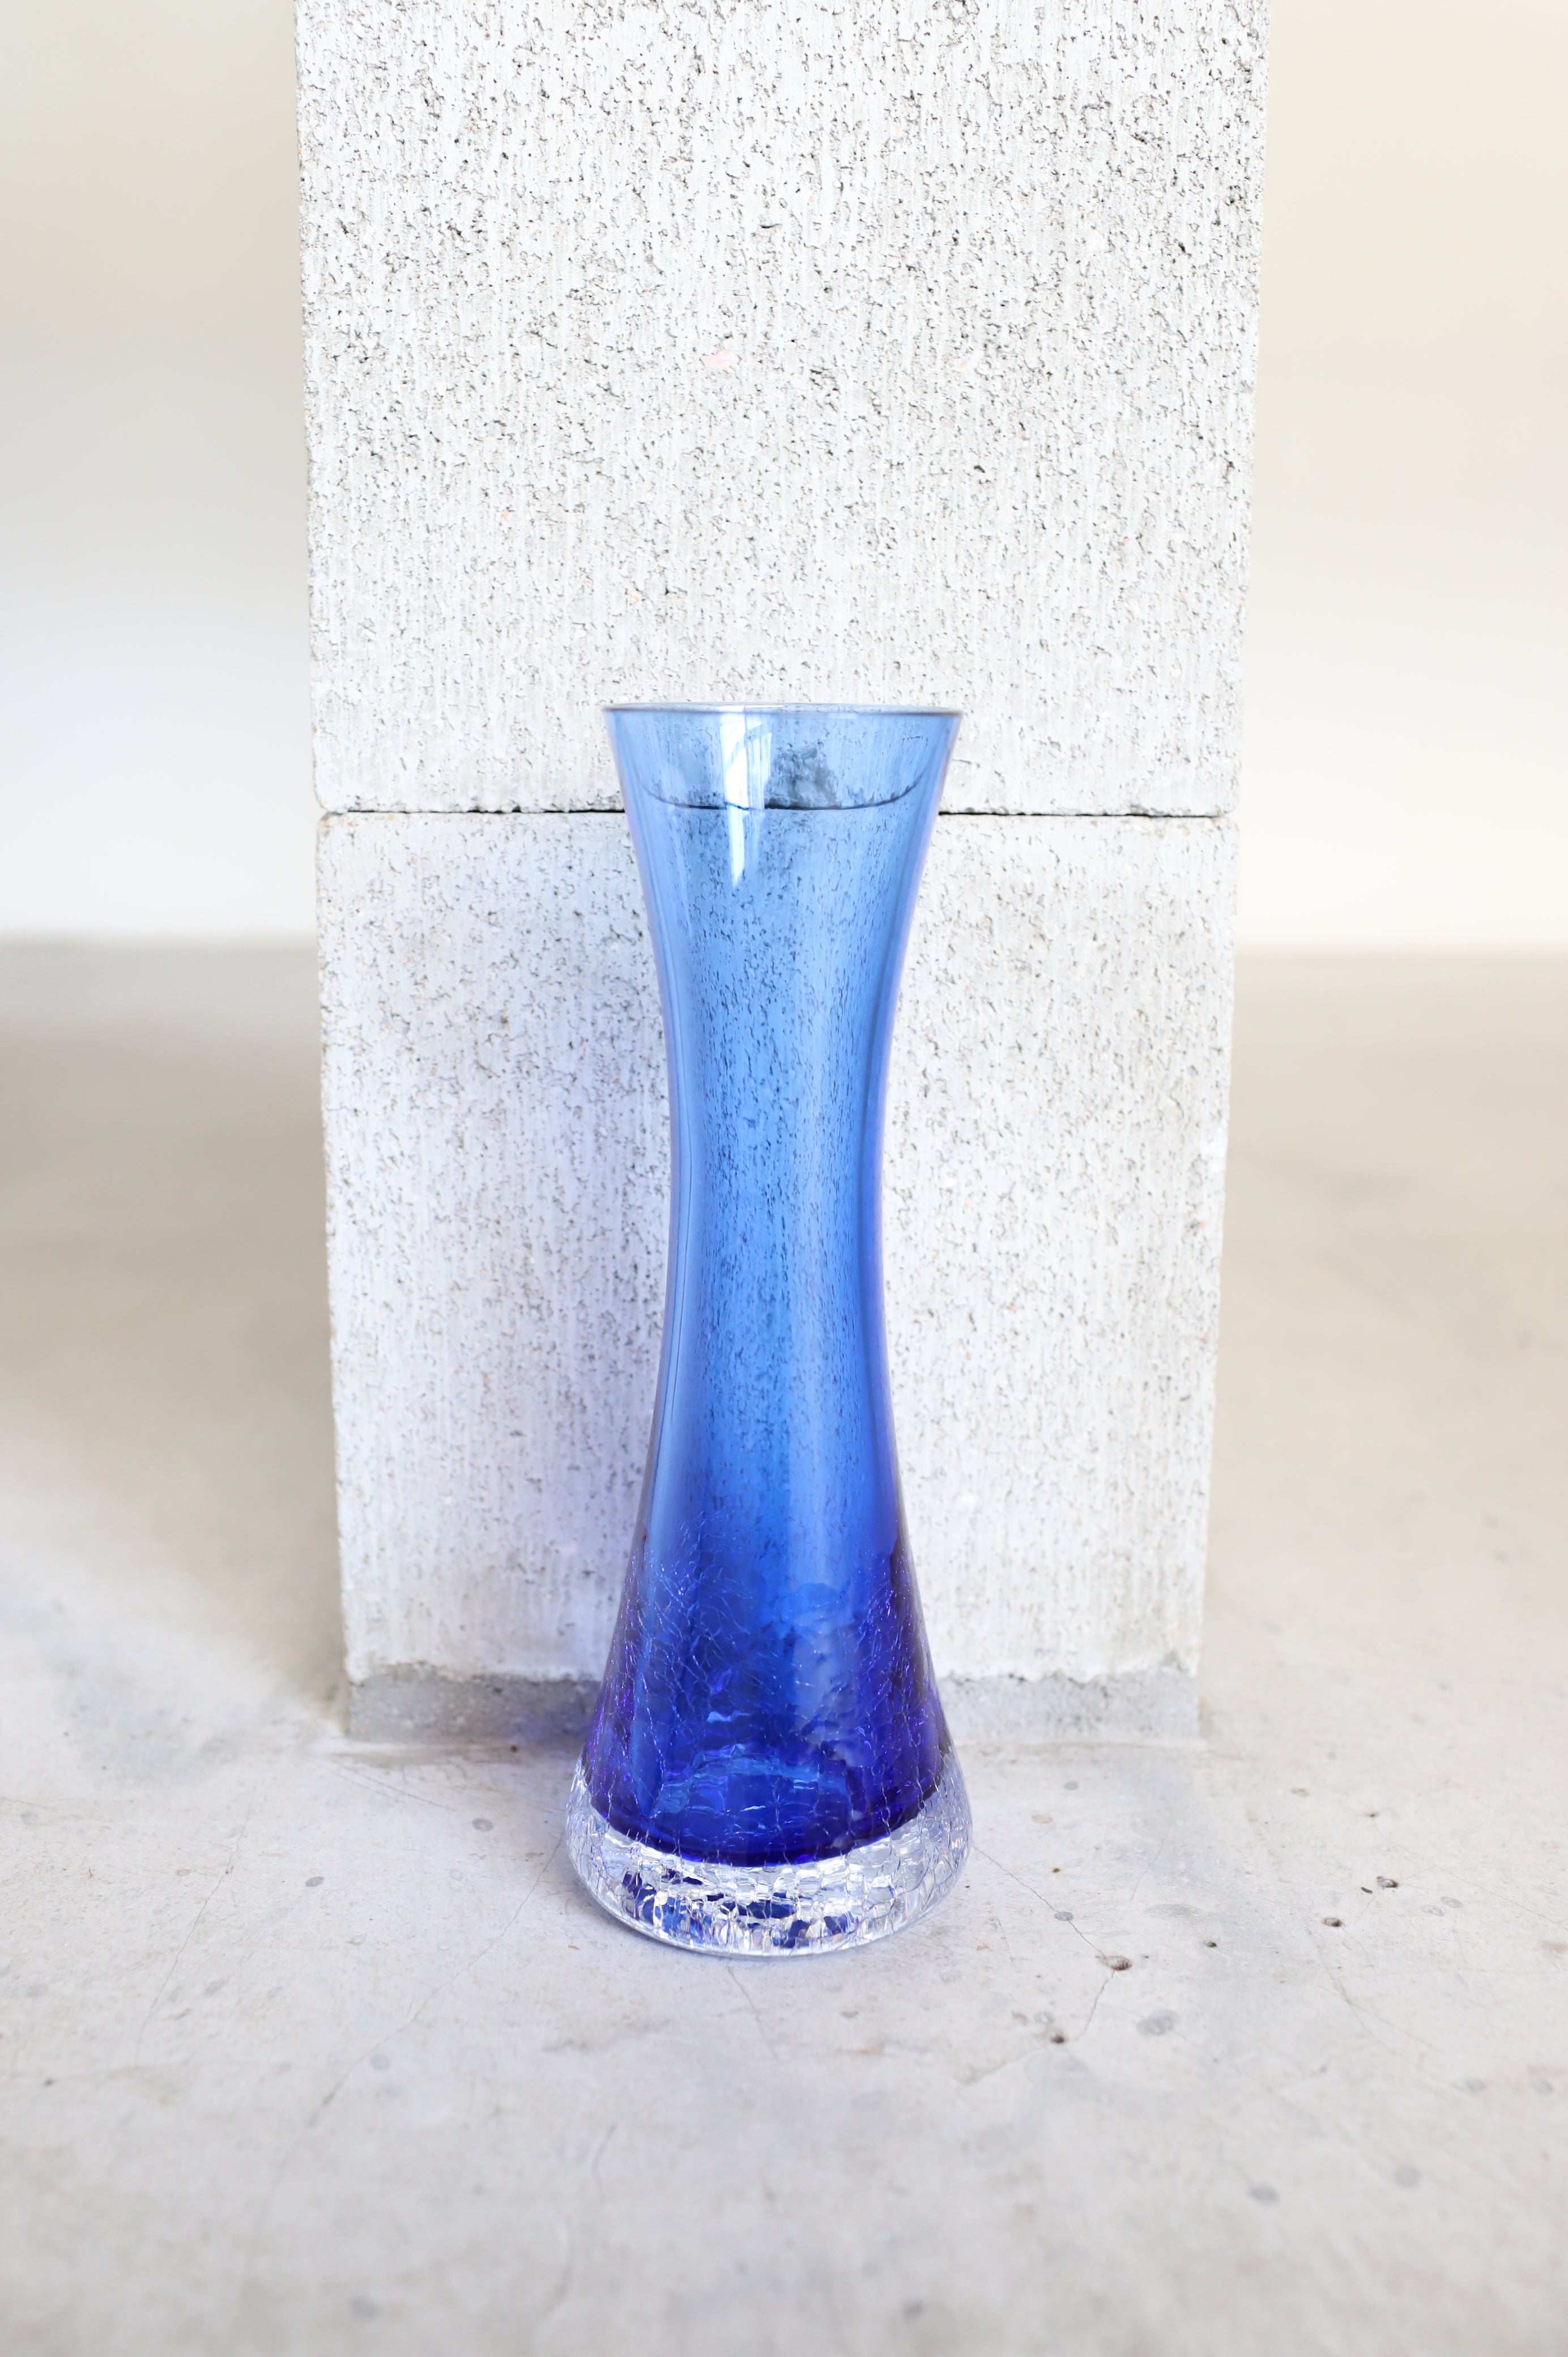 August Vase #25